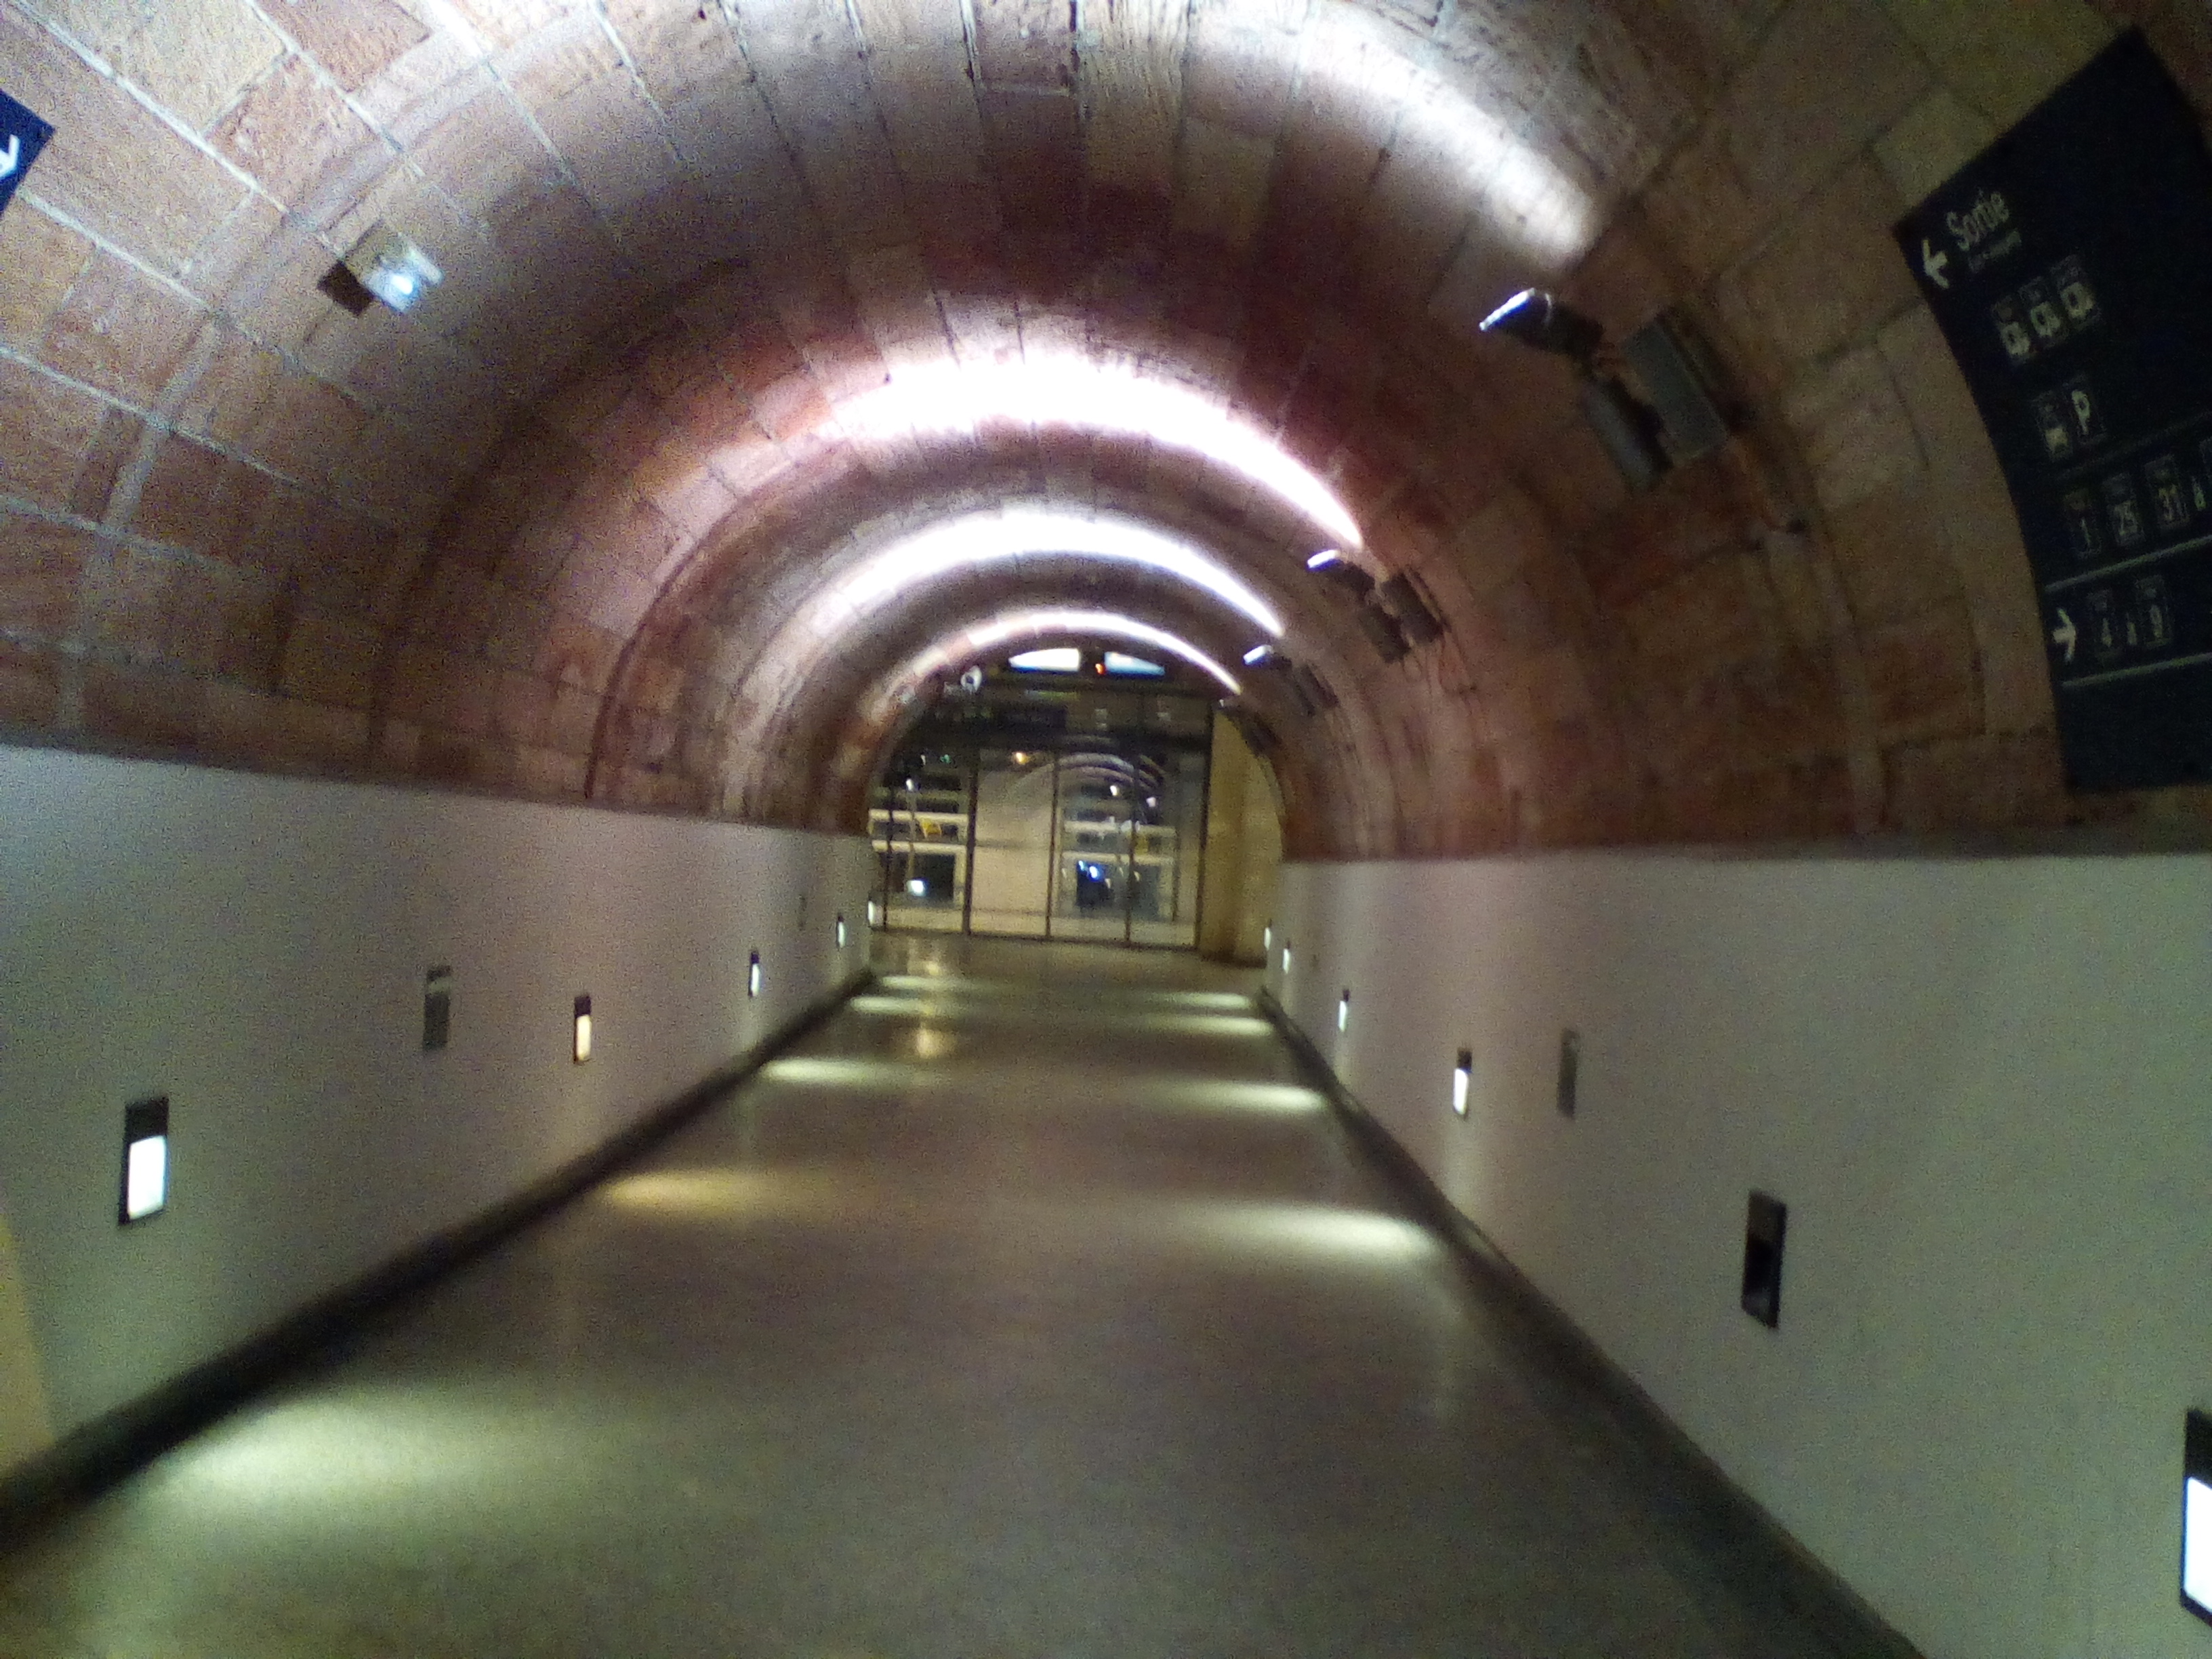 Tunel faiblement illuminé. La voute est arrondie, les murs sont blancs en bas et rougeâtres en haut.